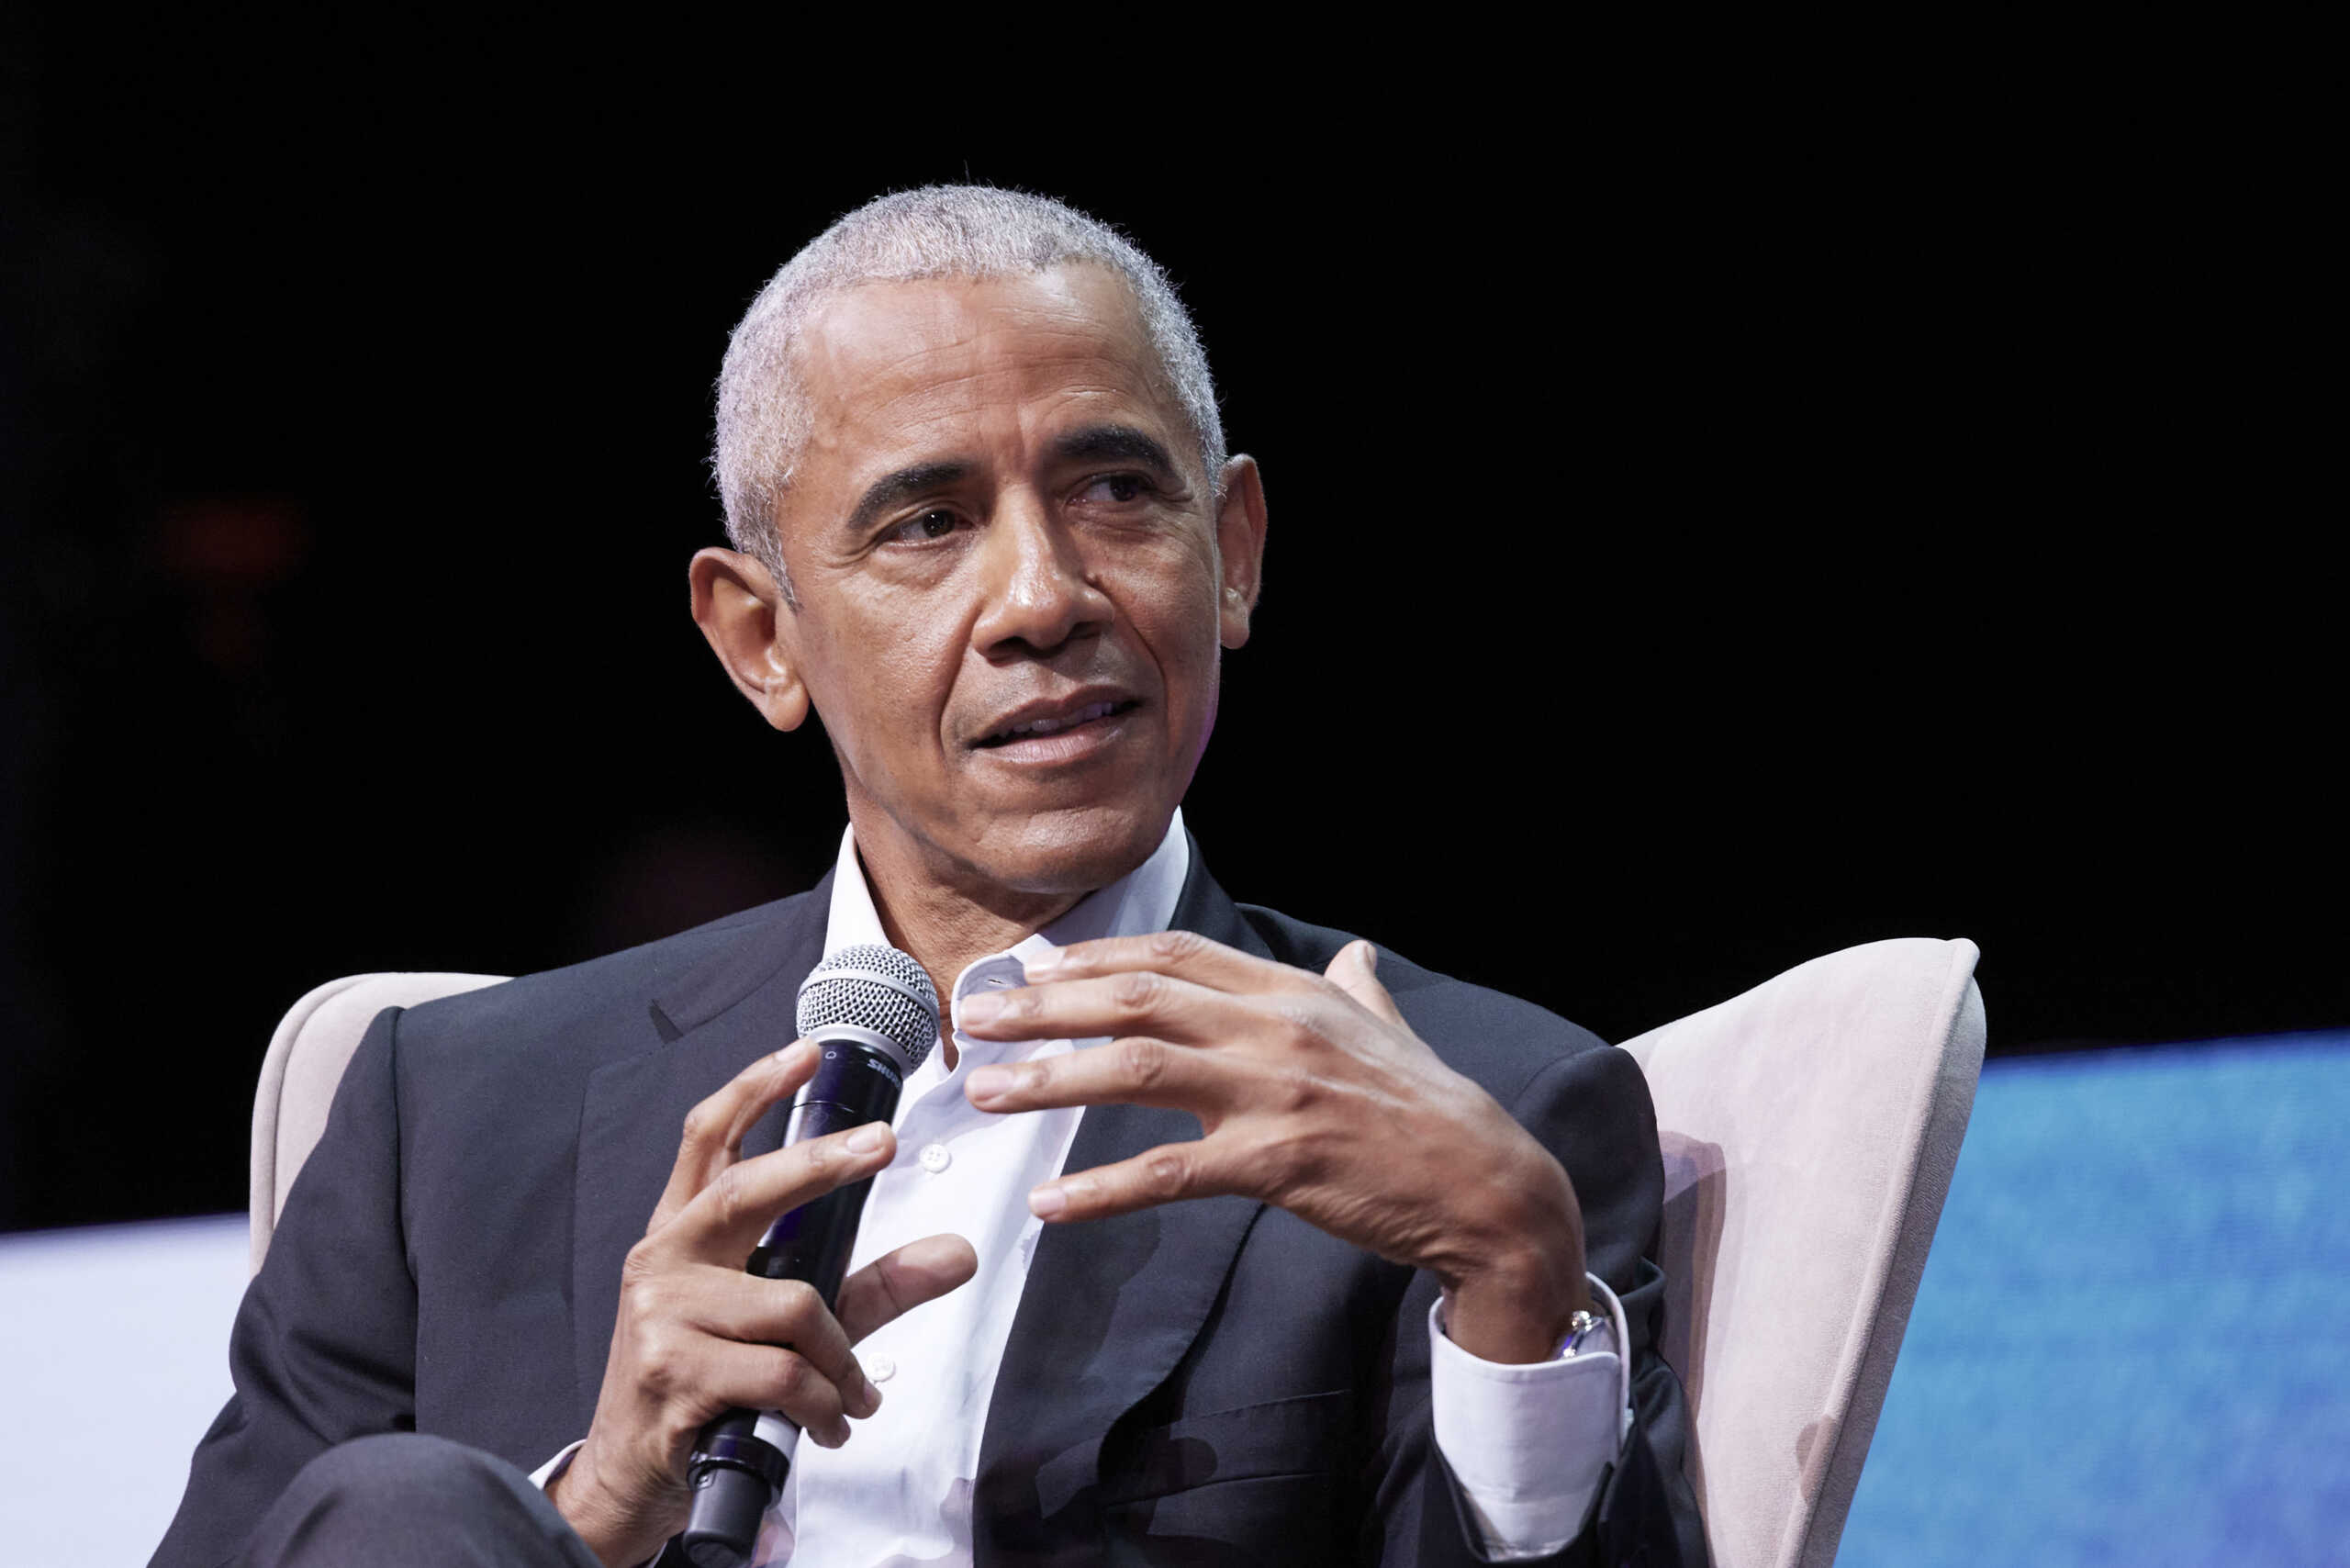 Ο Μπαράκ Ομπάμα ανέβασε βίντεο γεμάτο μπουζούκι και Ελλάδα από την επίσκεψή του